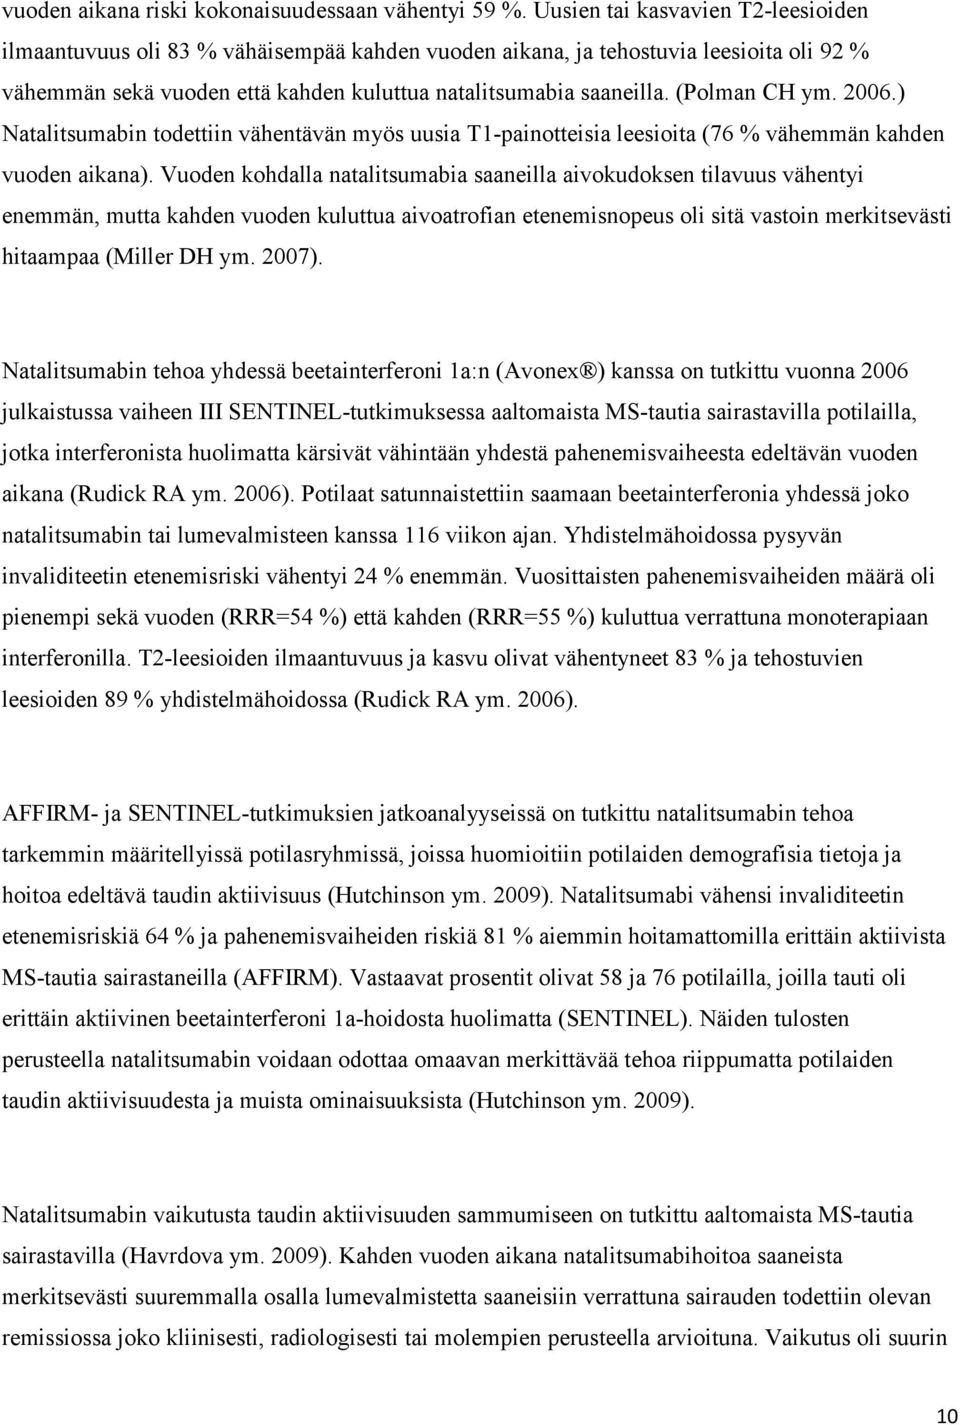 (Polman CH ym. 2006.) Natalitsumabin todettiin vähentävän myös uusia T1-painotteisia leesioita (76 % vähemmän kahden vuoden aikana).